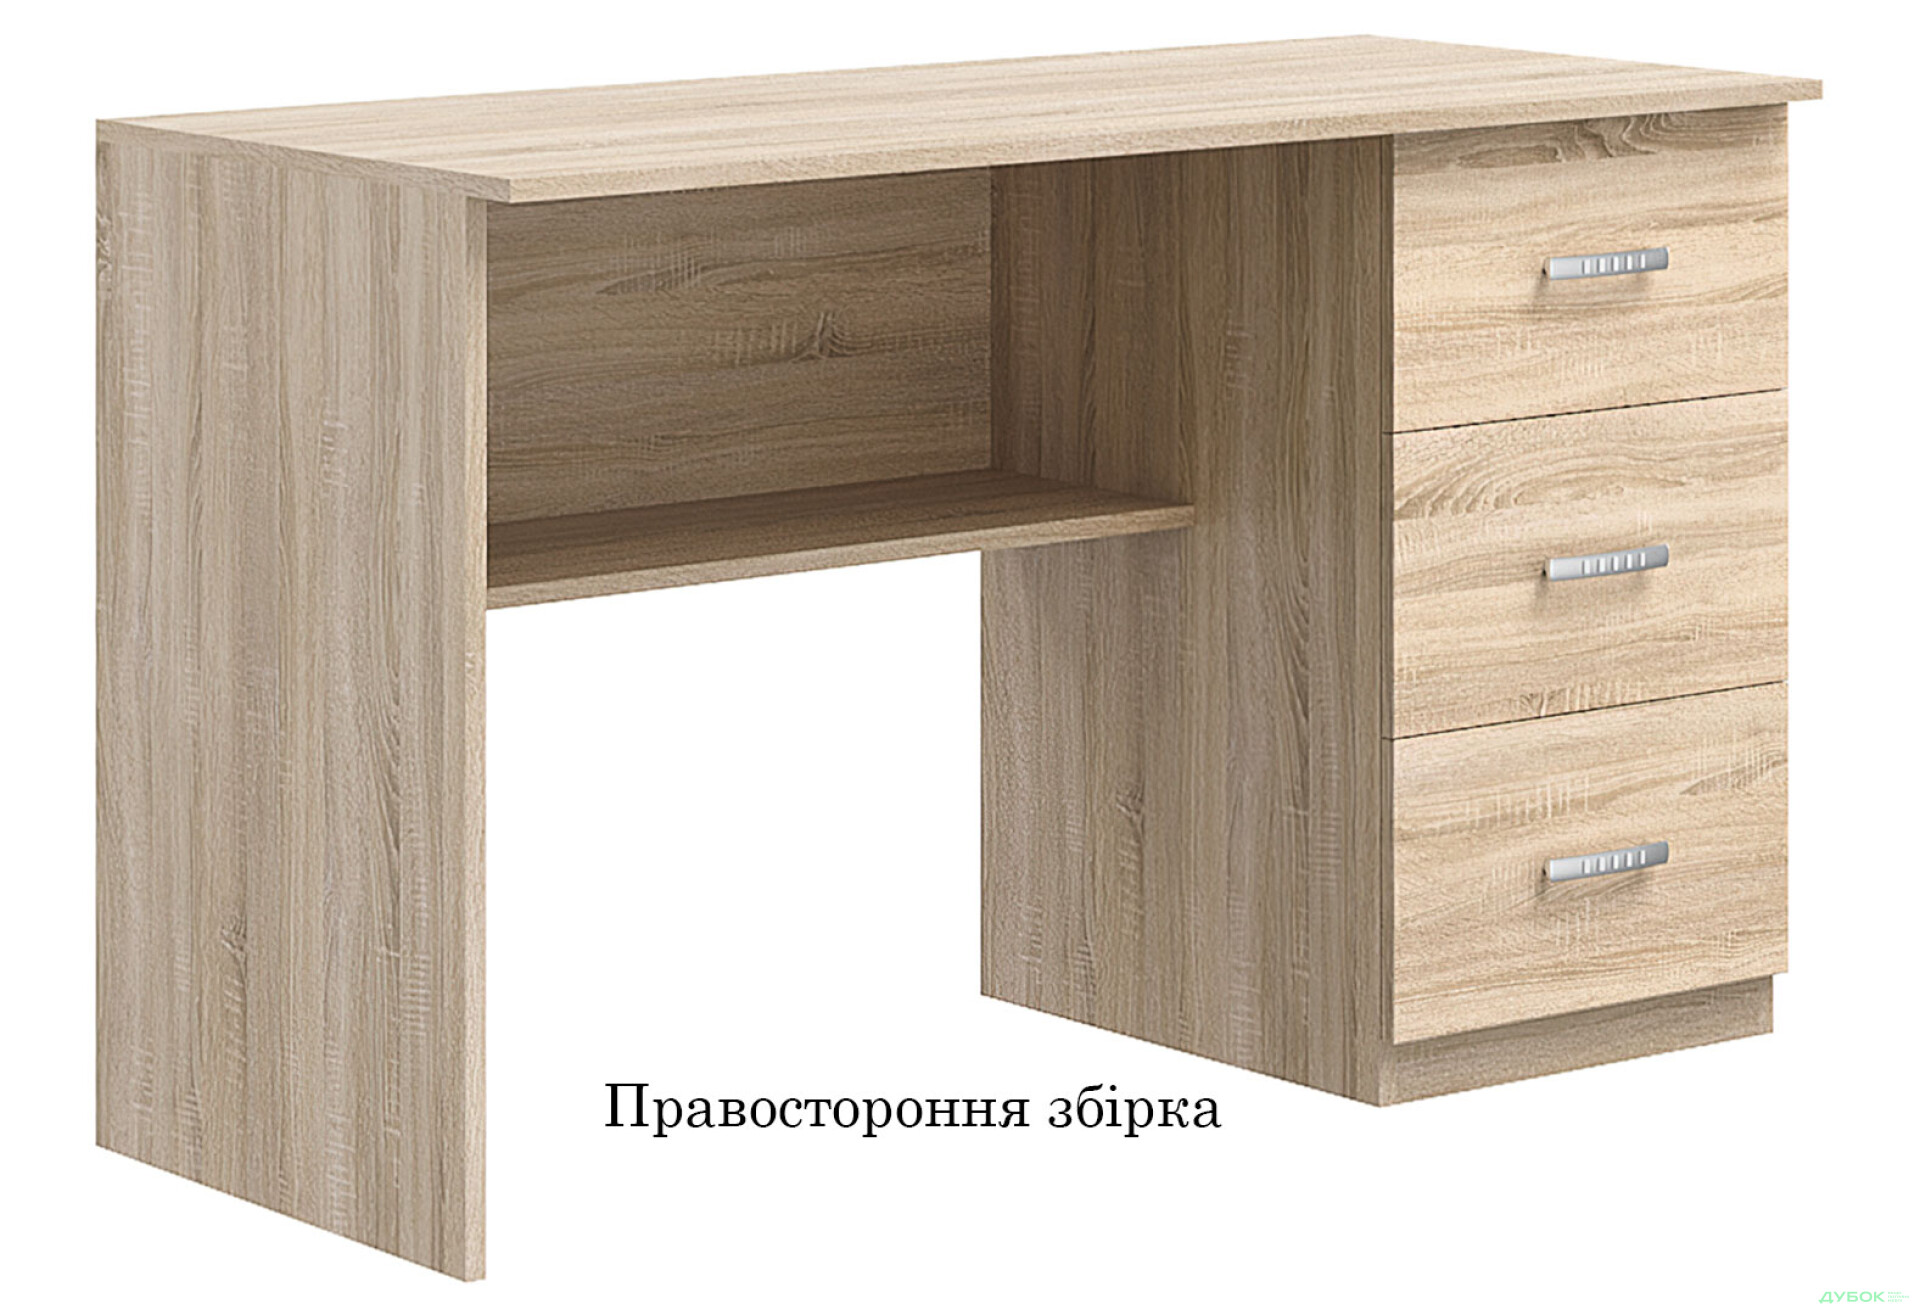 Фото 2 - Стол письменный Киевский стандарт Е4 СМ 120x60 см с ящиками